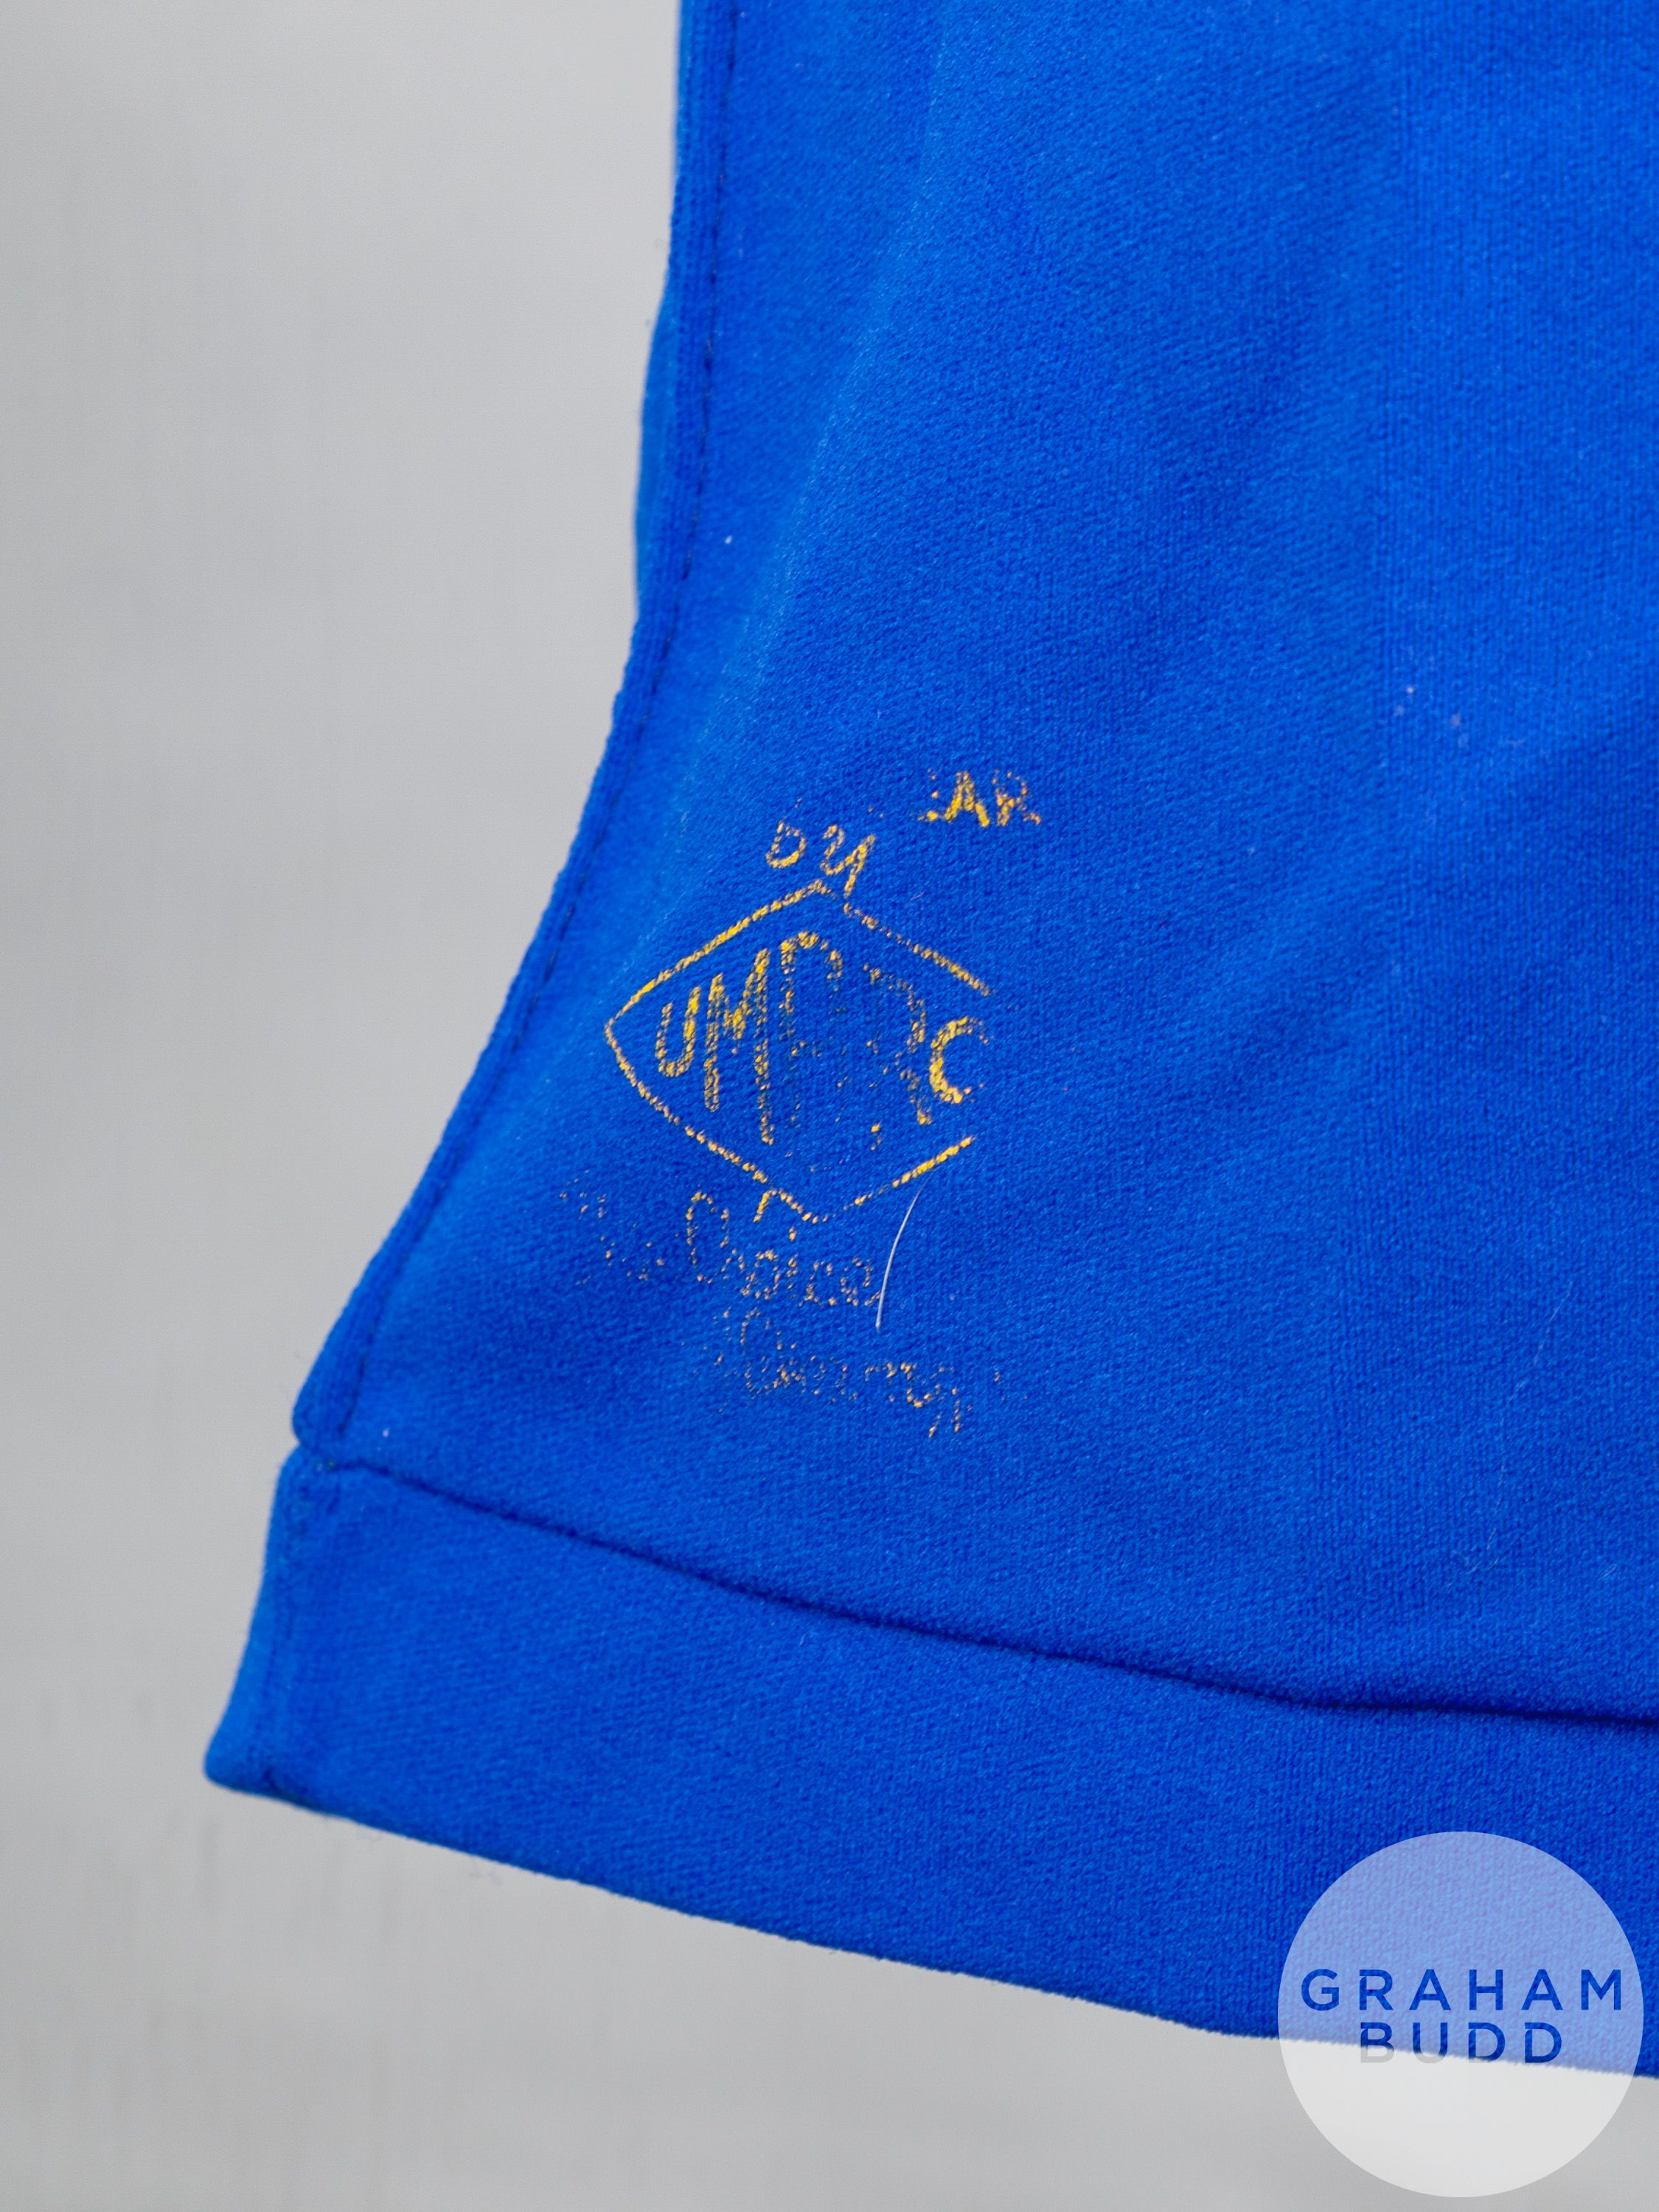 Alex Miller blue No.12 Rangers v. Aberdeen Scottish League Final short-sleeved shirt - Image 6 of 6